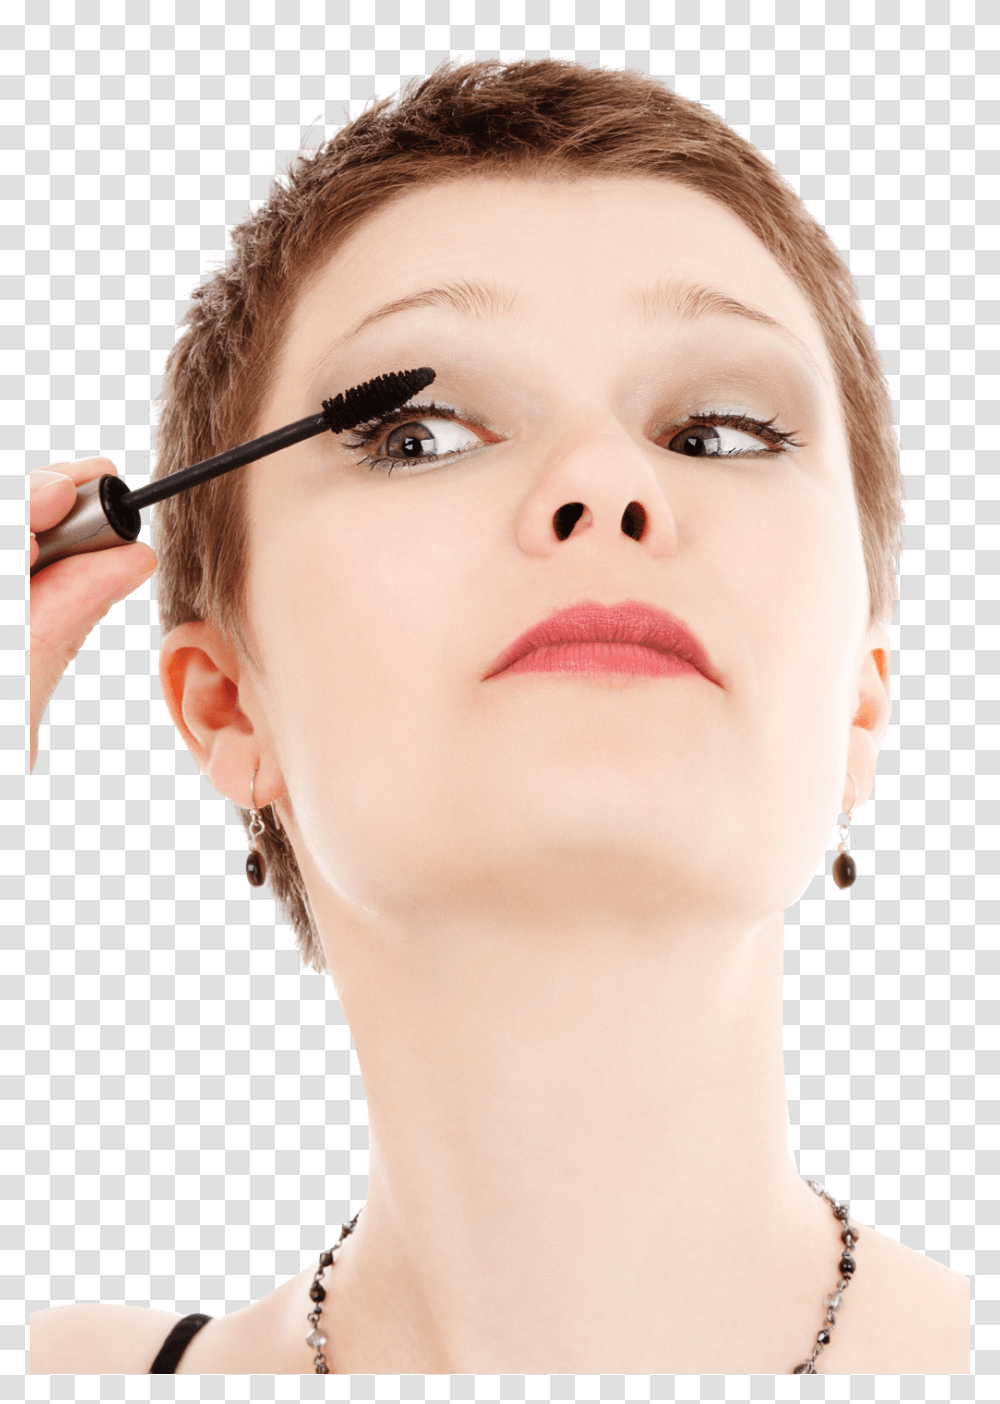 Girl Doing Makeup Image, Person, Human, Lipstick, Cosmetics Transparent Png